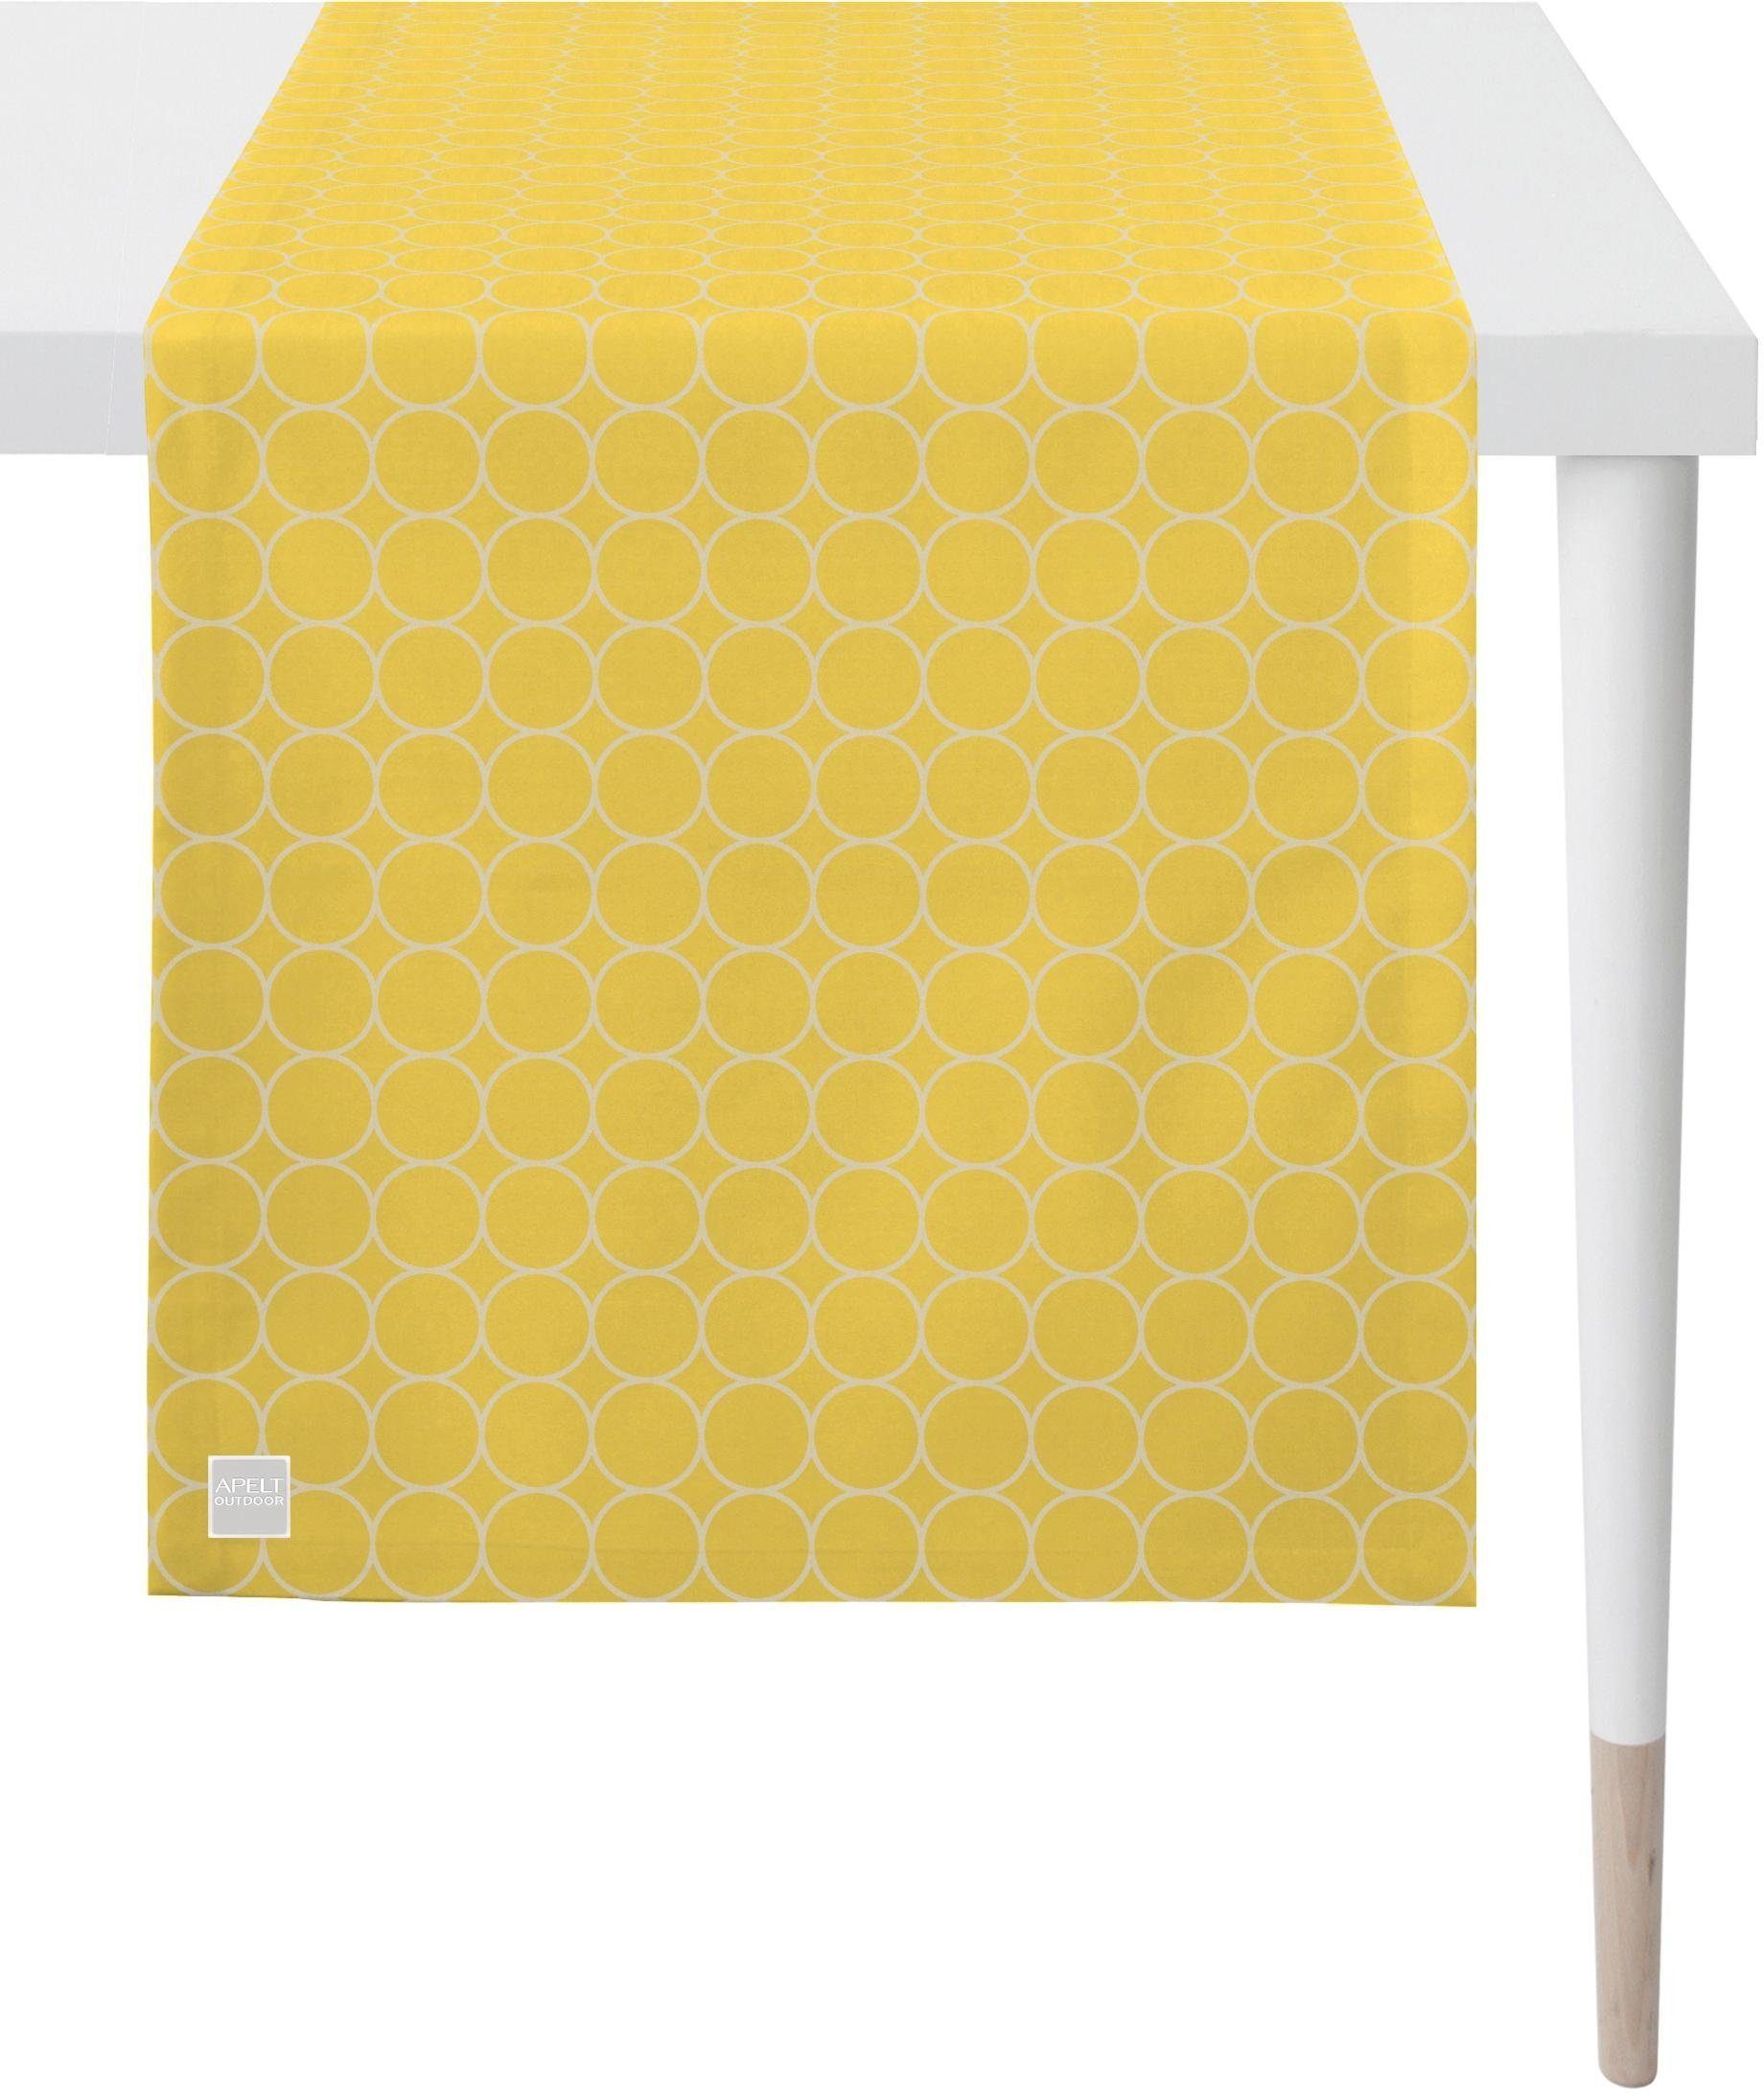 APELT Tischläufer 3973 Outdoor, (1-tlg), Jacquardgewebe Sommerdeko, Sommer gelb/weiß